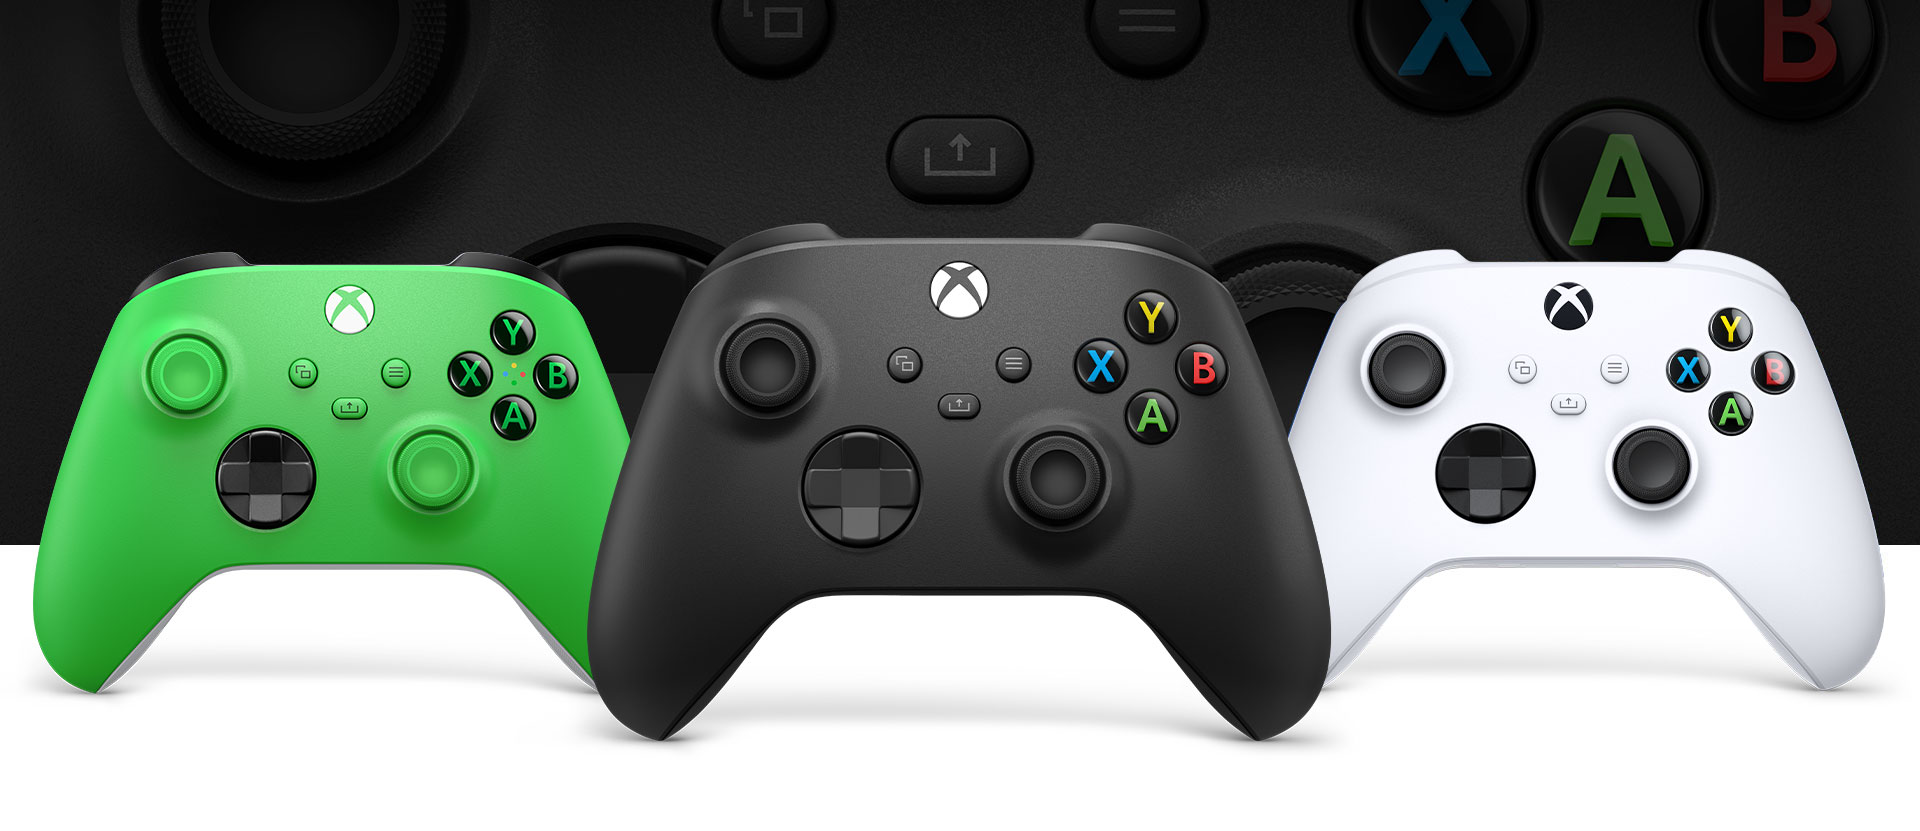 Xbox Carbon Black Controller im Vordergrund, Green links daneben und Robot White rechts daneben